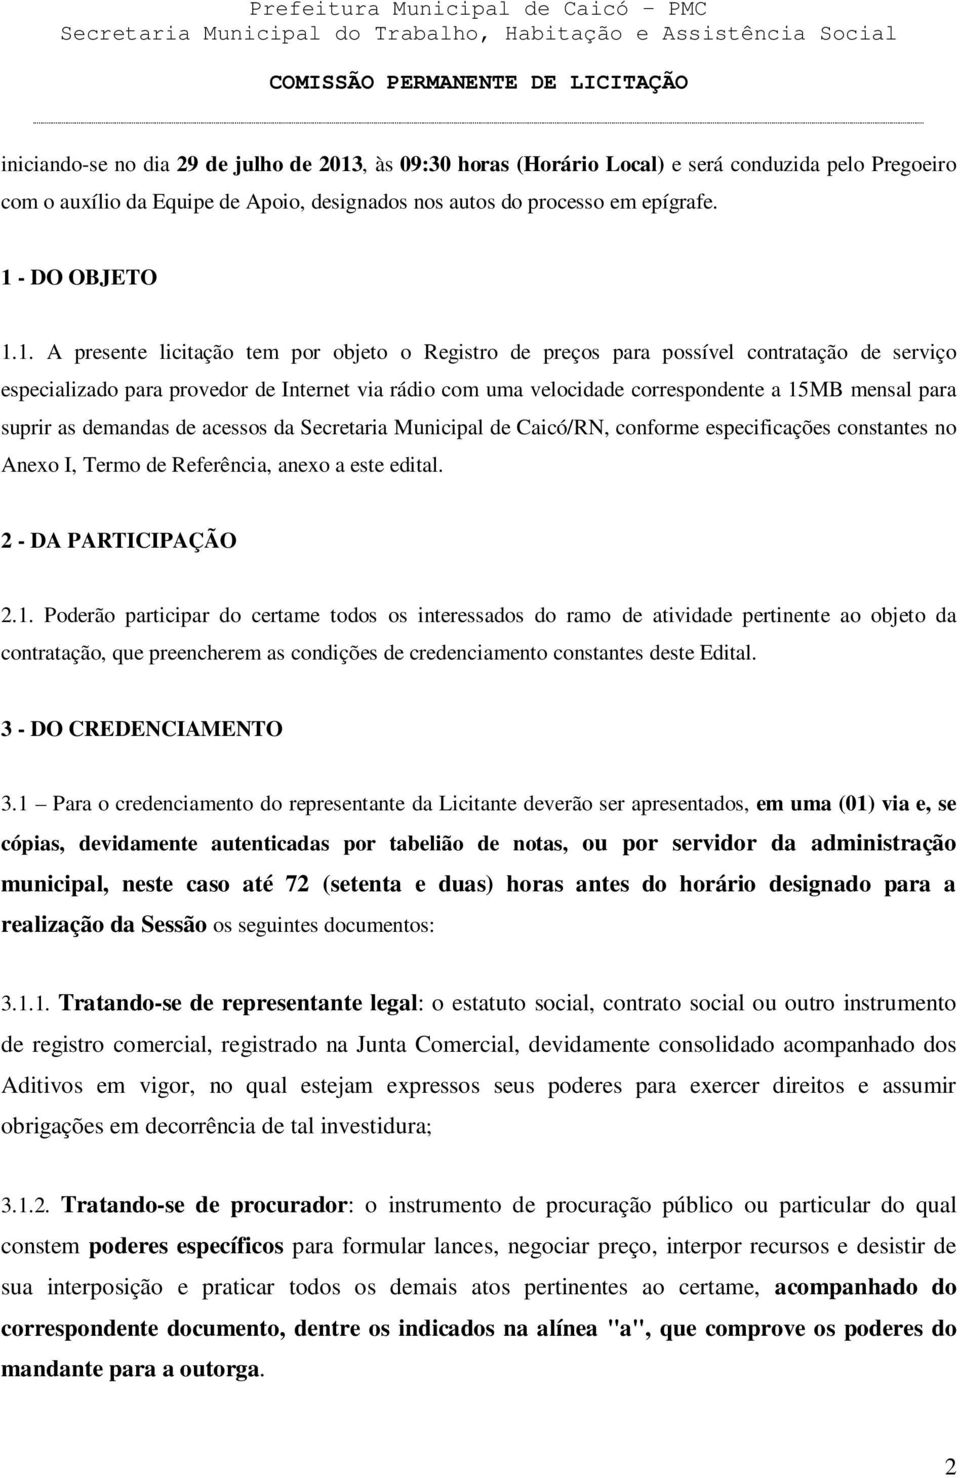 suprir as demandas de acessos da Secretaria Municipal de Caicó/RN, conforme especificações constantes no Anexo I, Termo de Referência, anexo a este edital. 2 - DA PARTICIPAÇÃO 2.1.